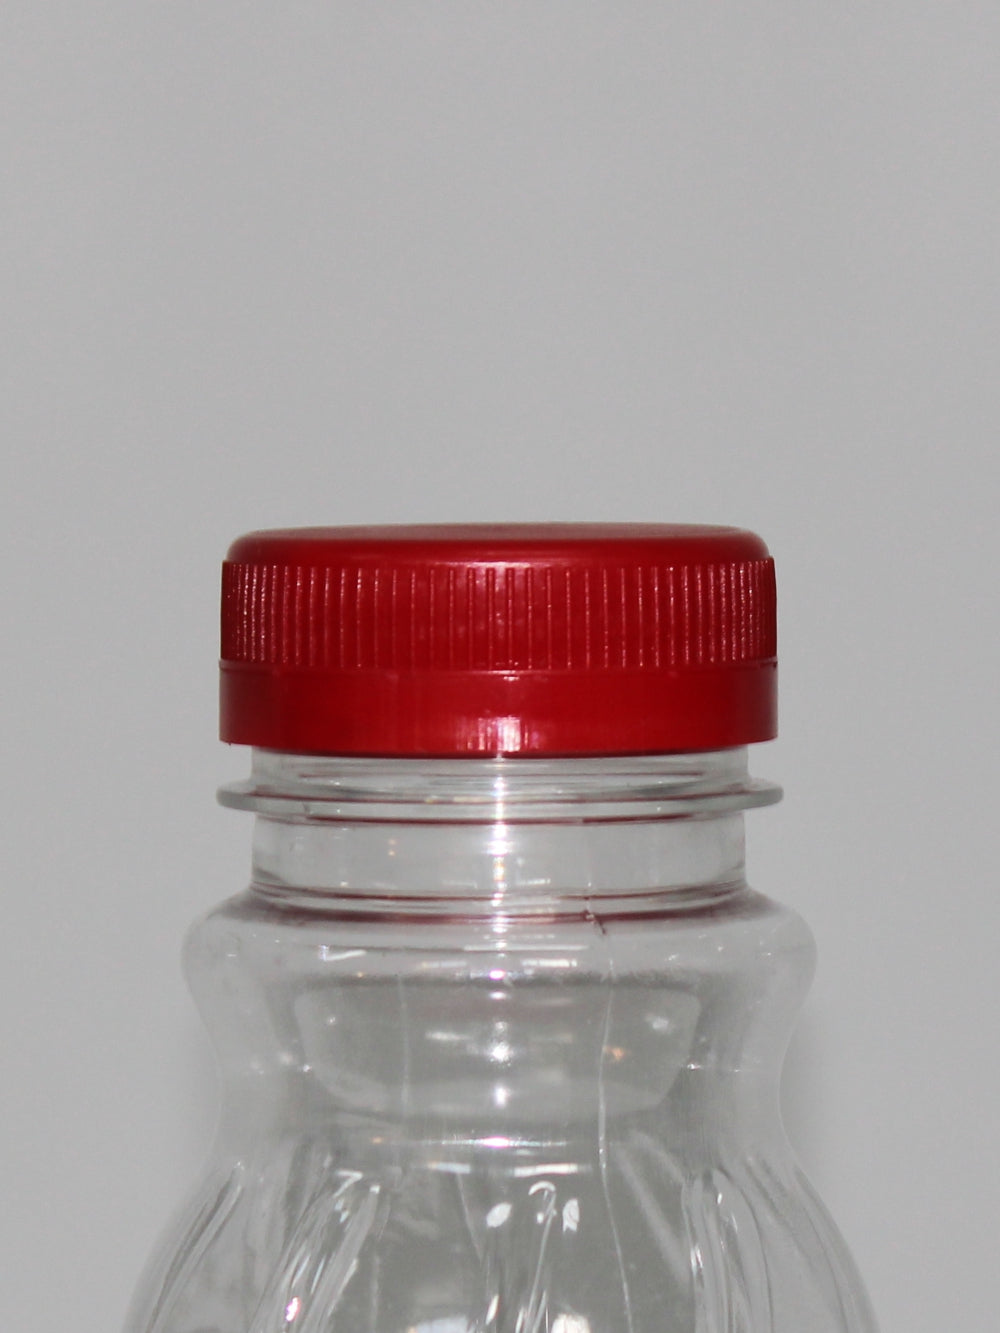 2Lt Grip PET Bottle - (Pack of 38 units)